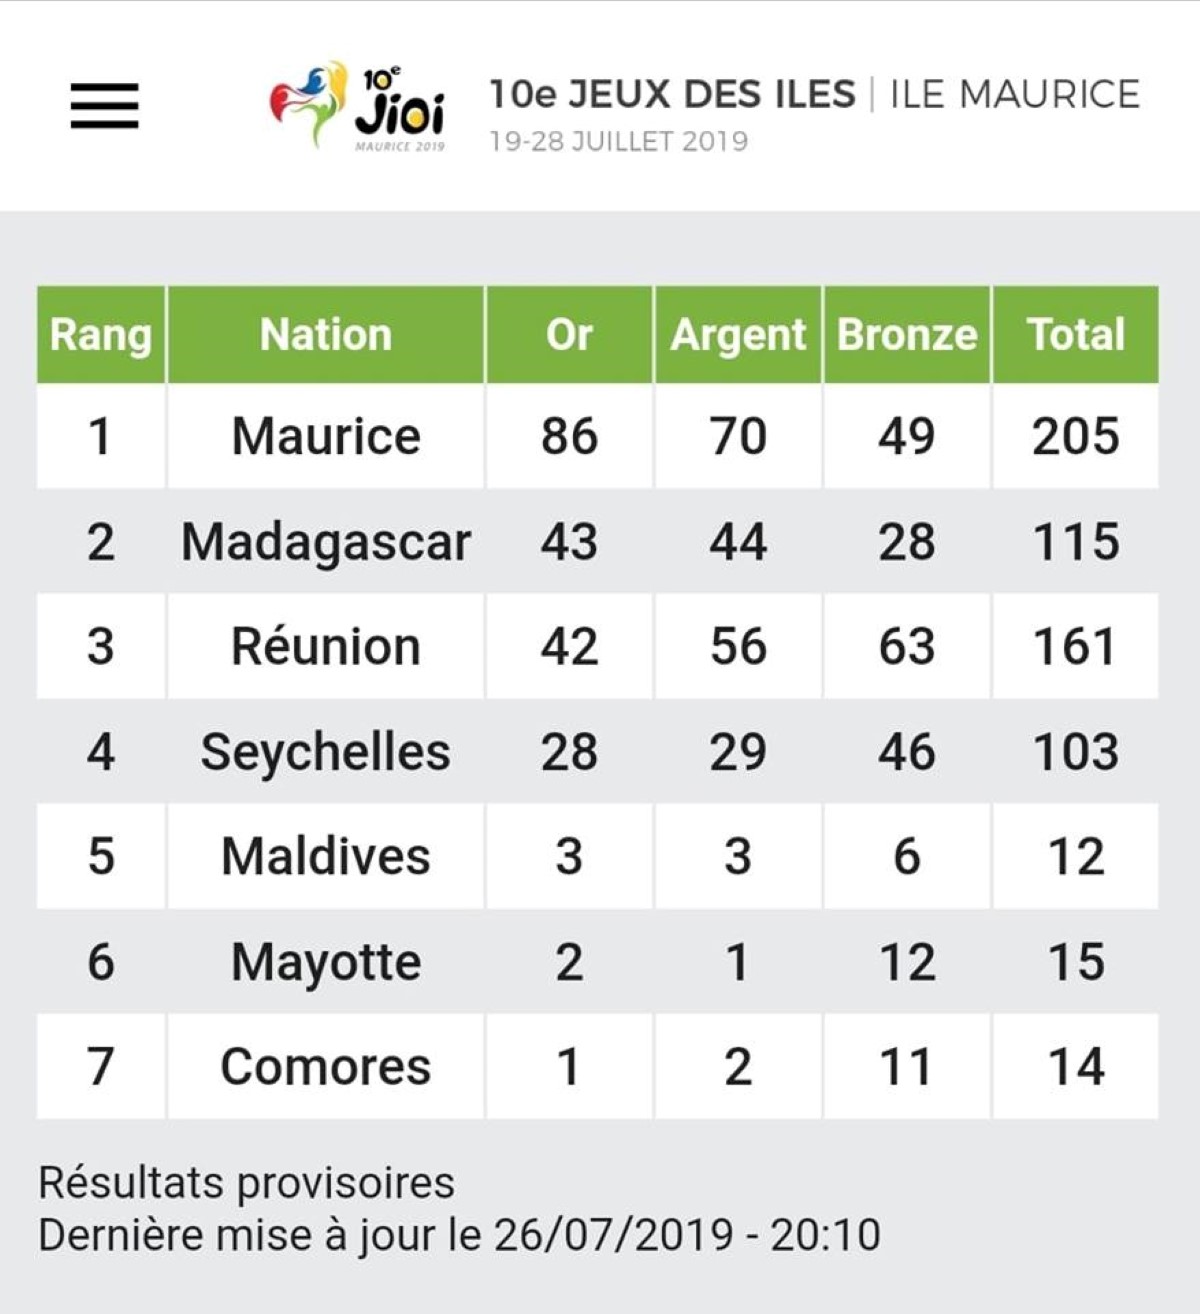 Historique ! Maurice entre dans l'histoire des jeux des îles avec 205 médailles